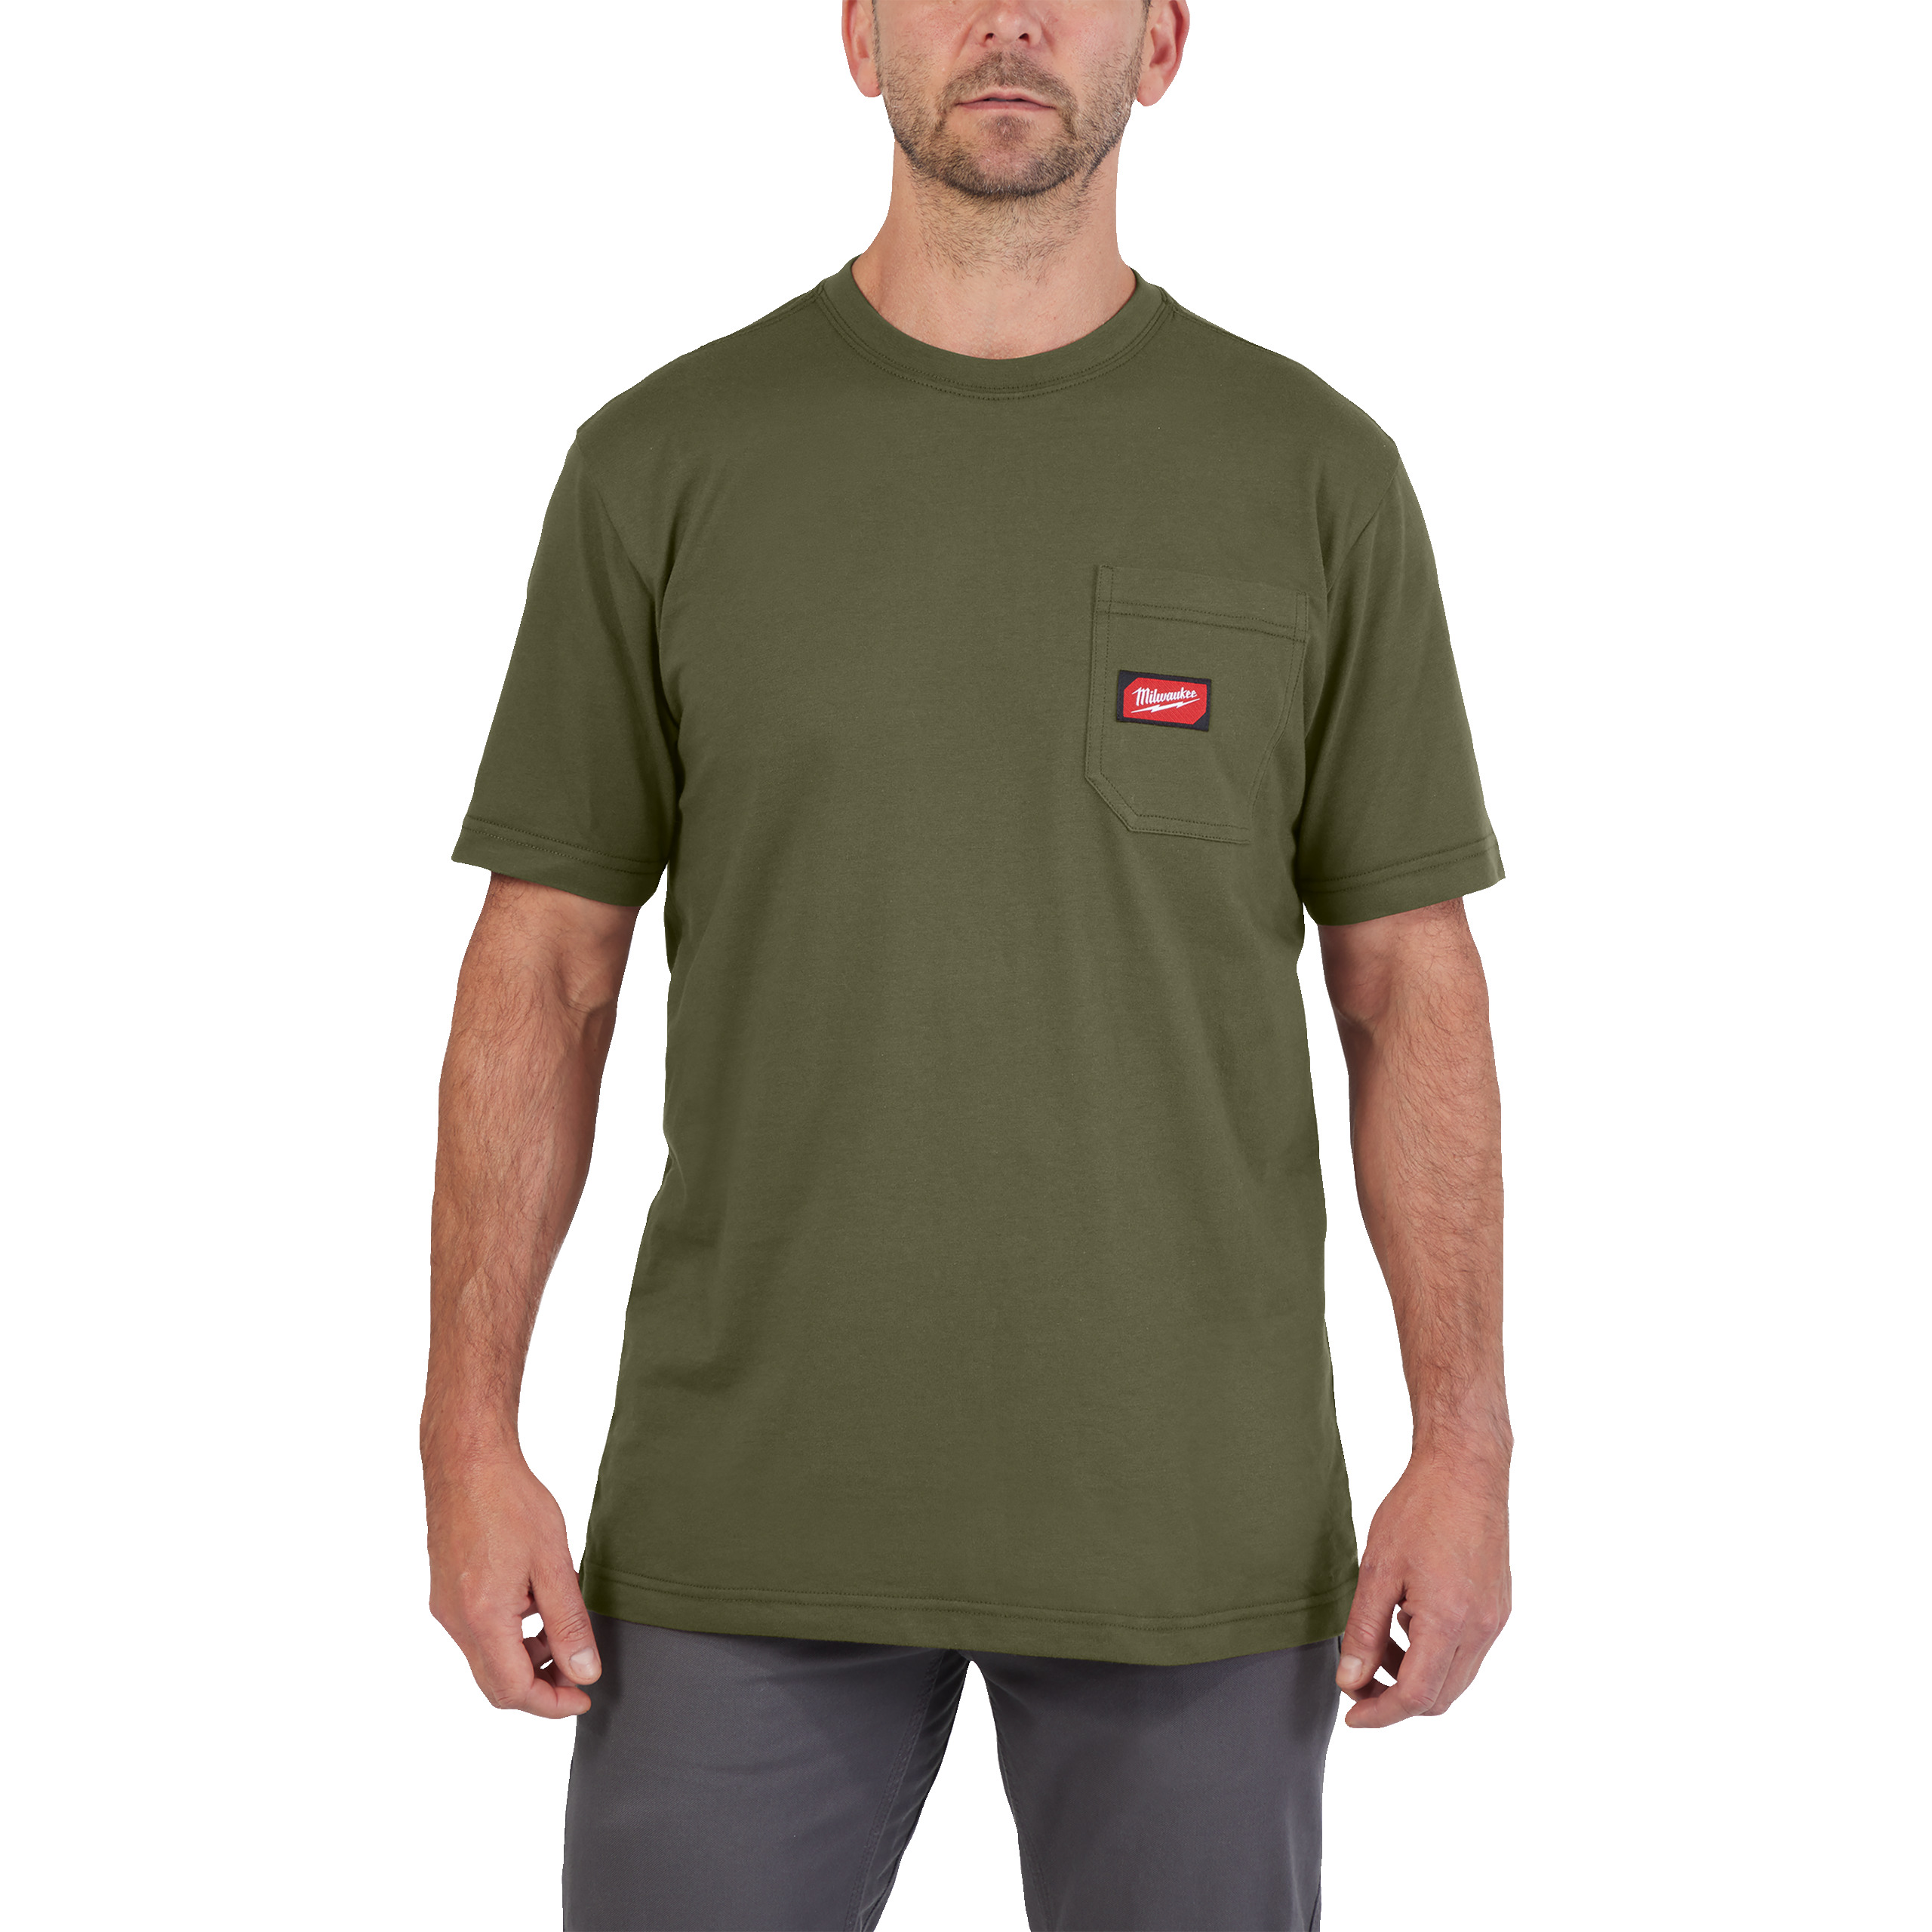 Arbeits-T-Shirt grün mit UV-Schutz (WTSSGN-S)